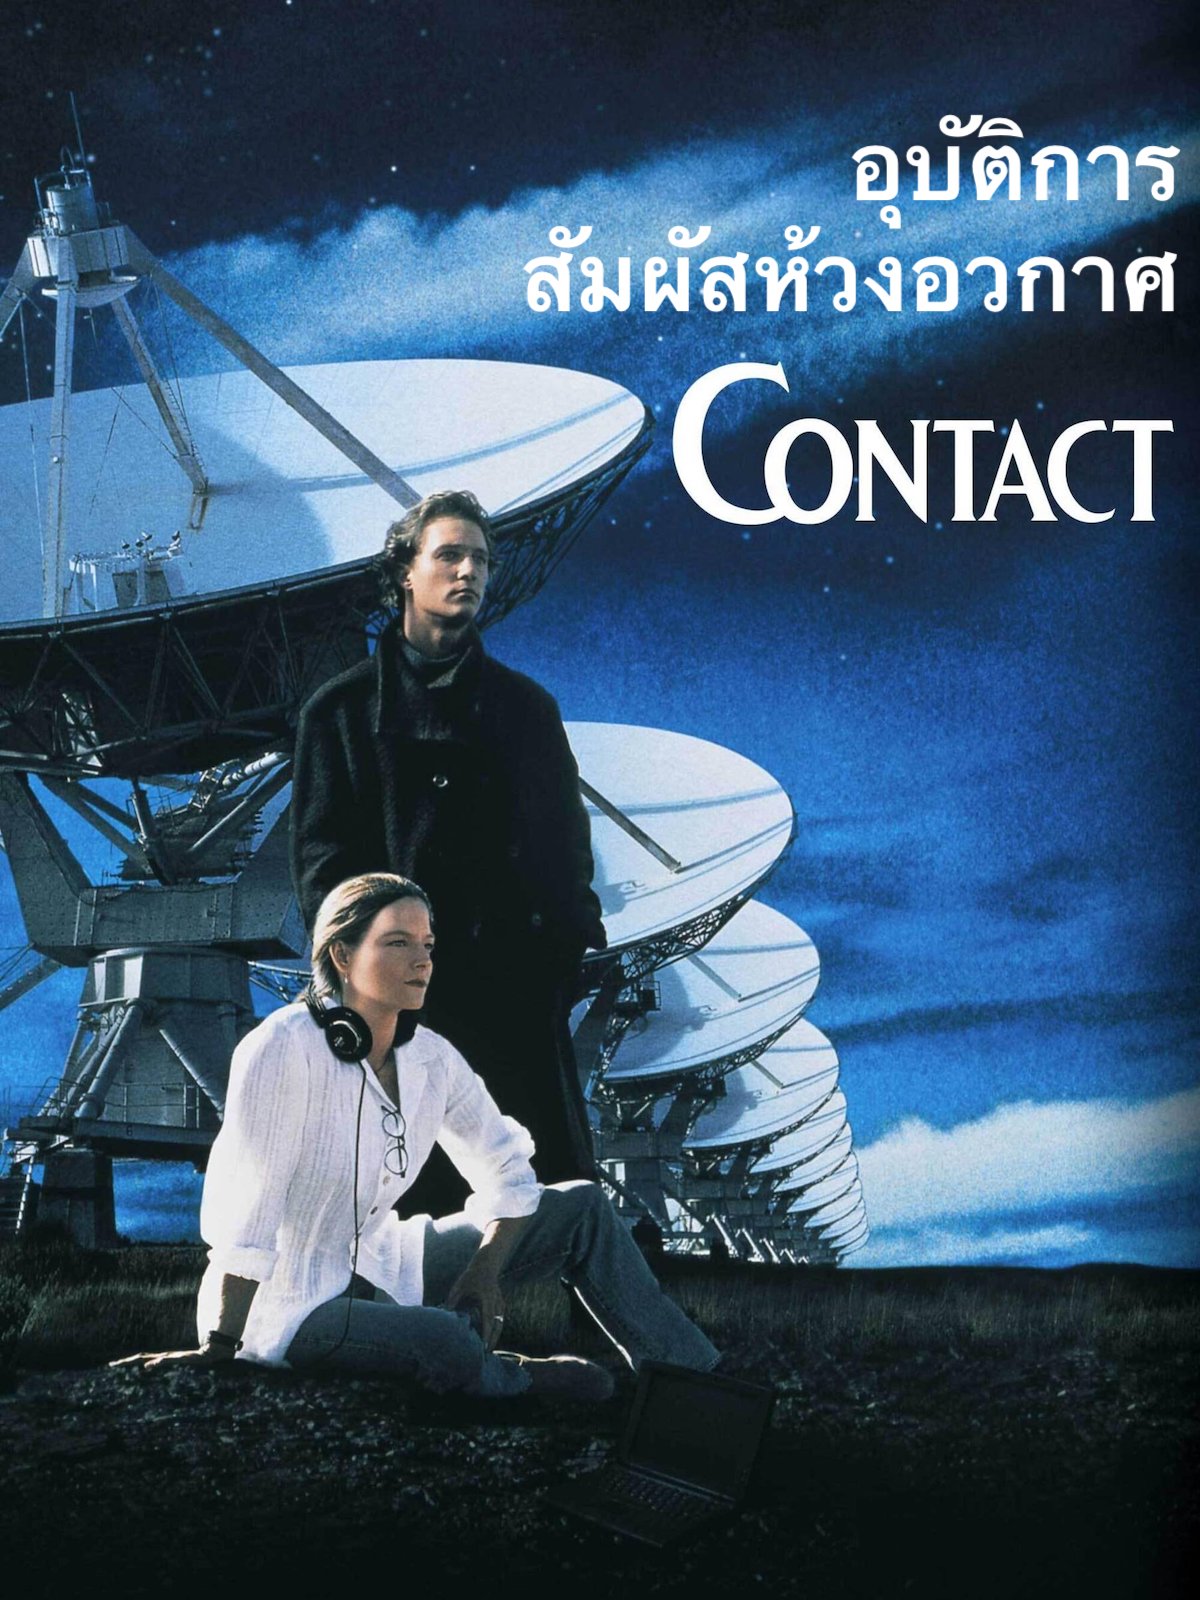 Contact (1997) อุบัติการสัมผัสห้วงอวกาศ